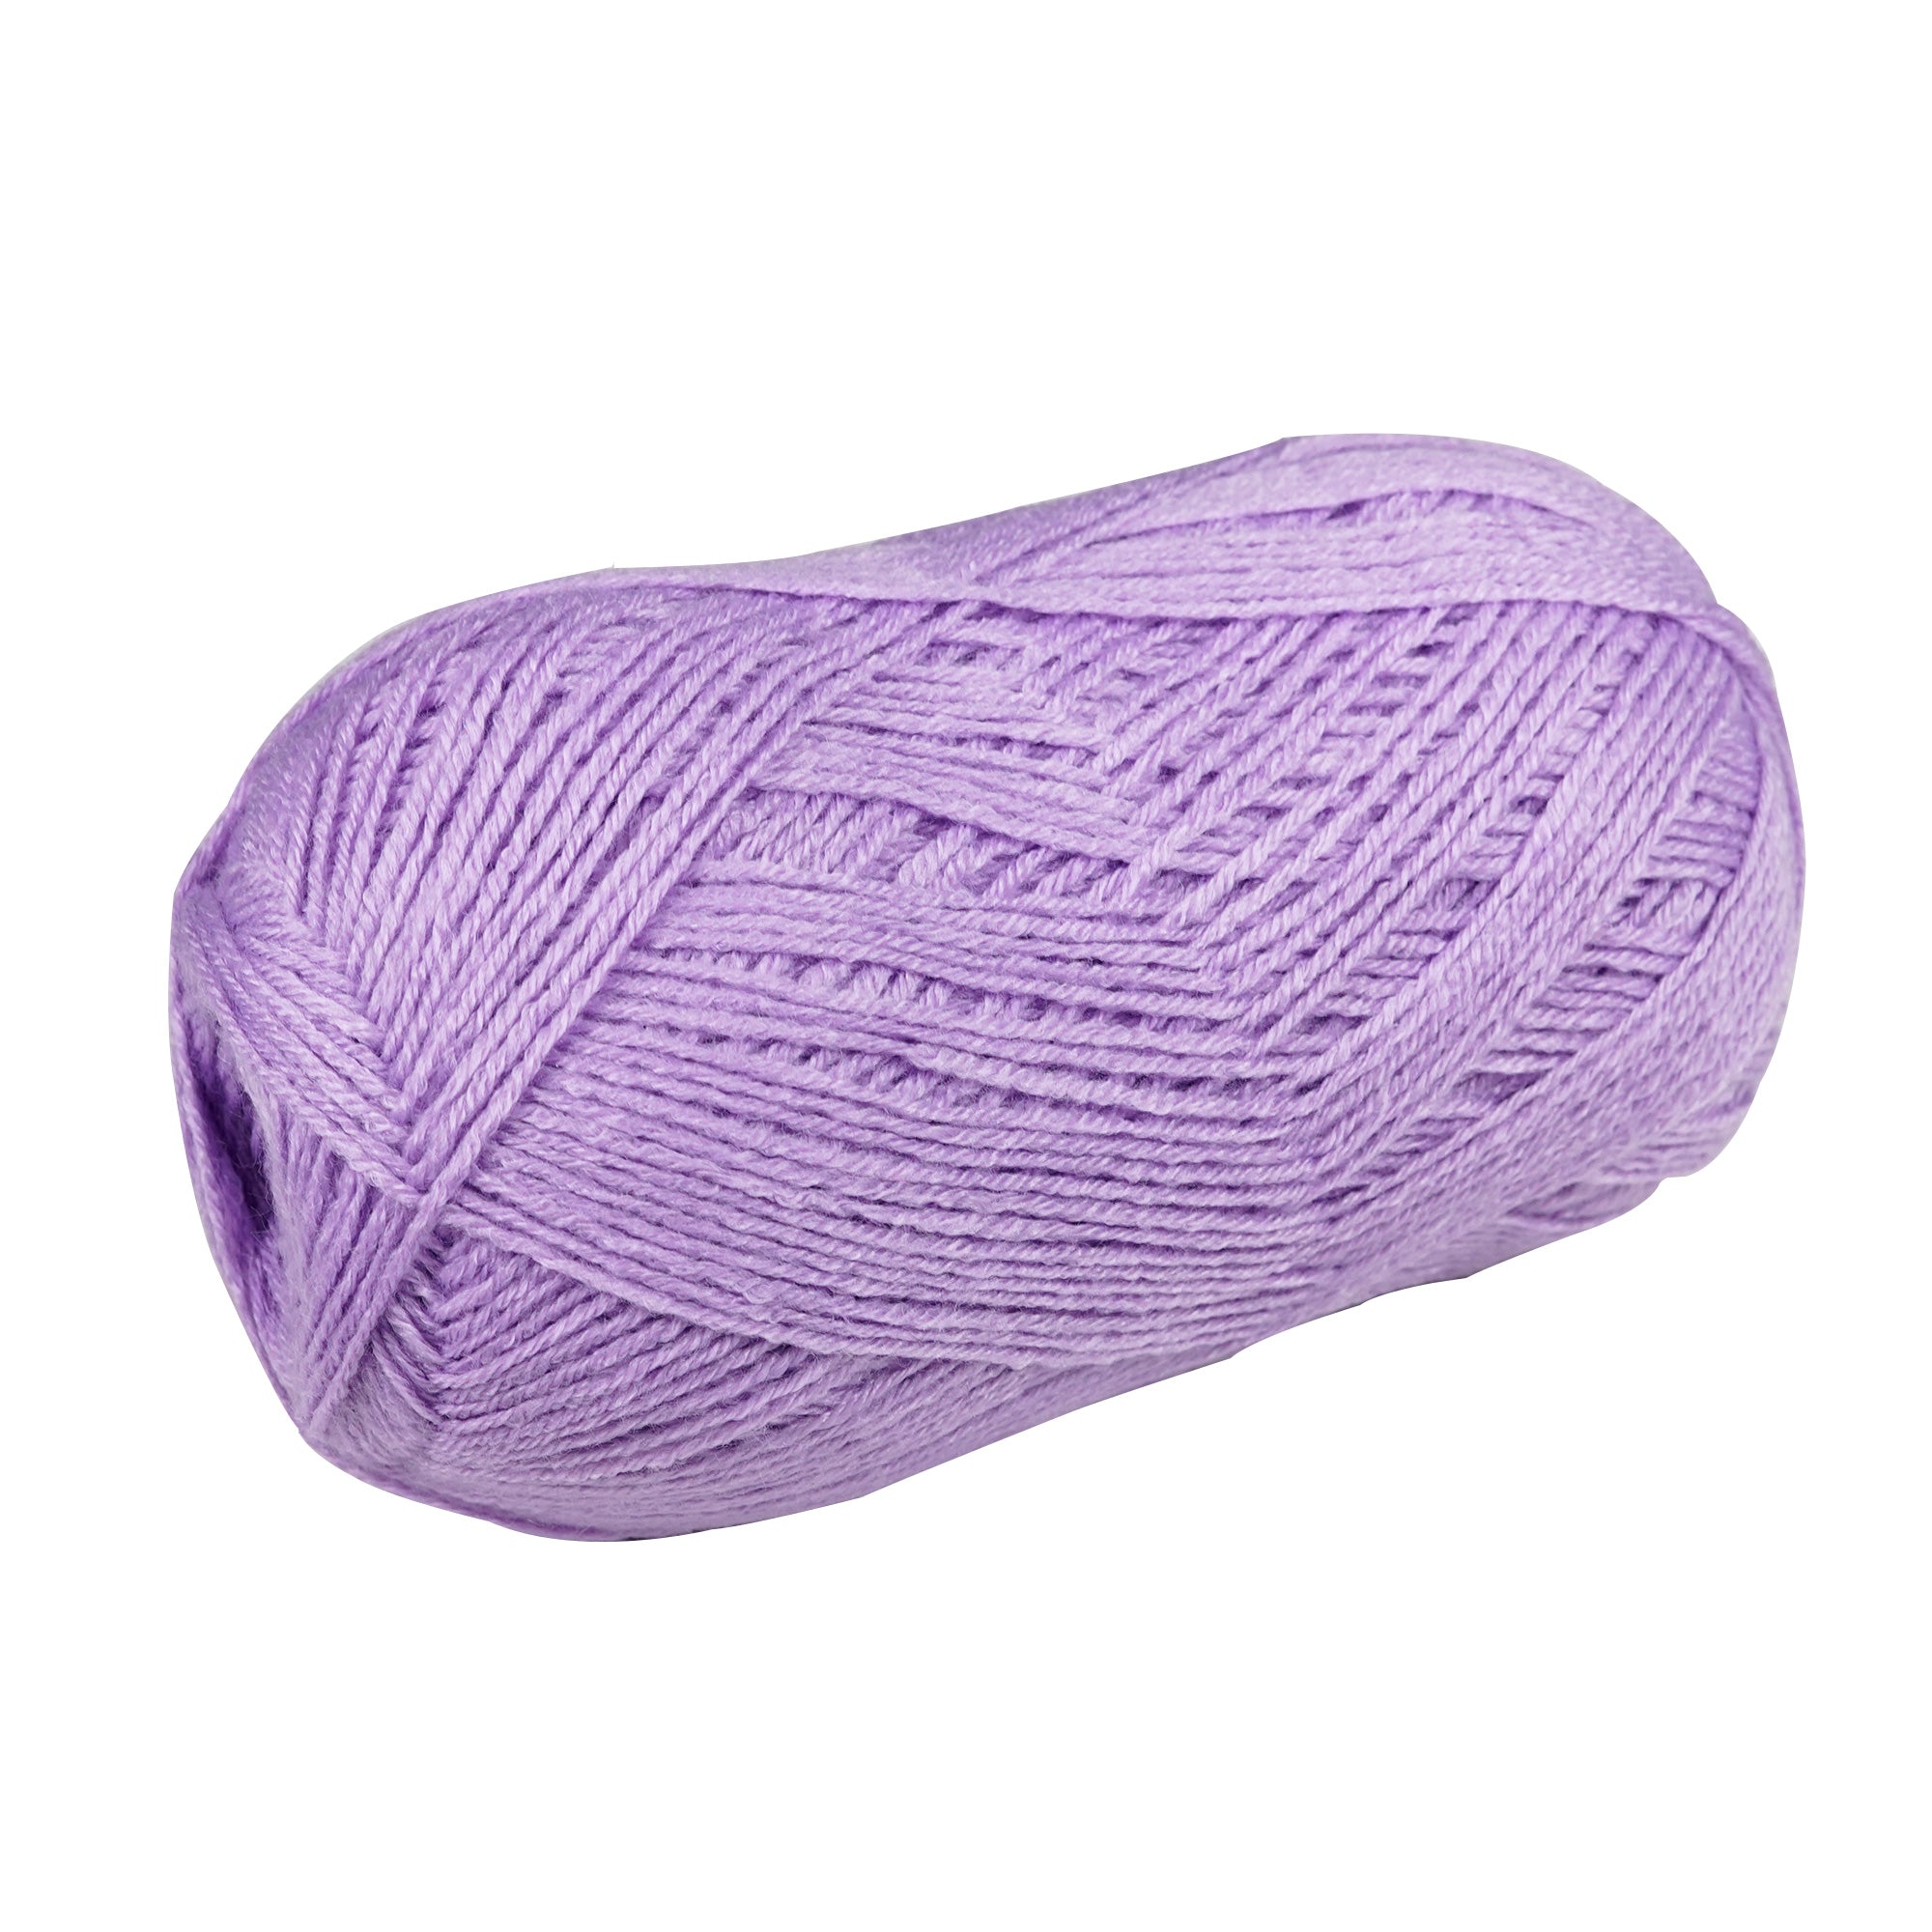 Porta Craft Super Soft Baby Acrylic Yarn 100% 100Gm 420M 4Ply Soft Lilac